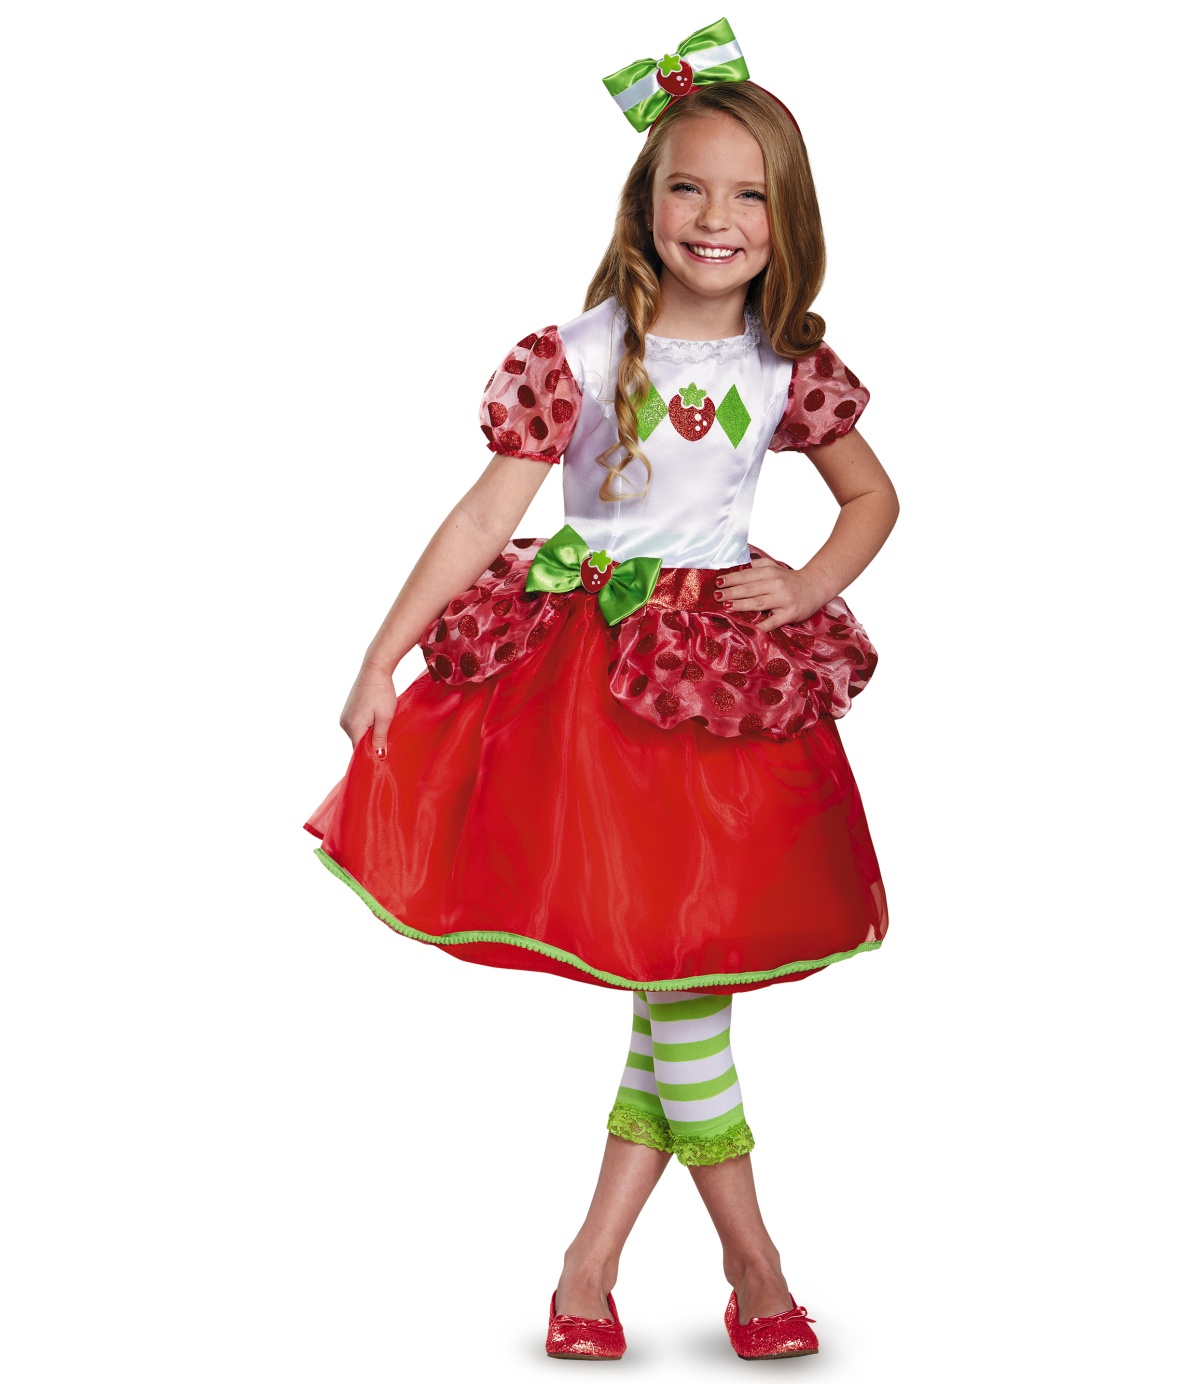  Girls Strawberry Shortcake Baby Costume